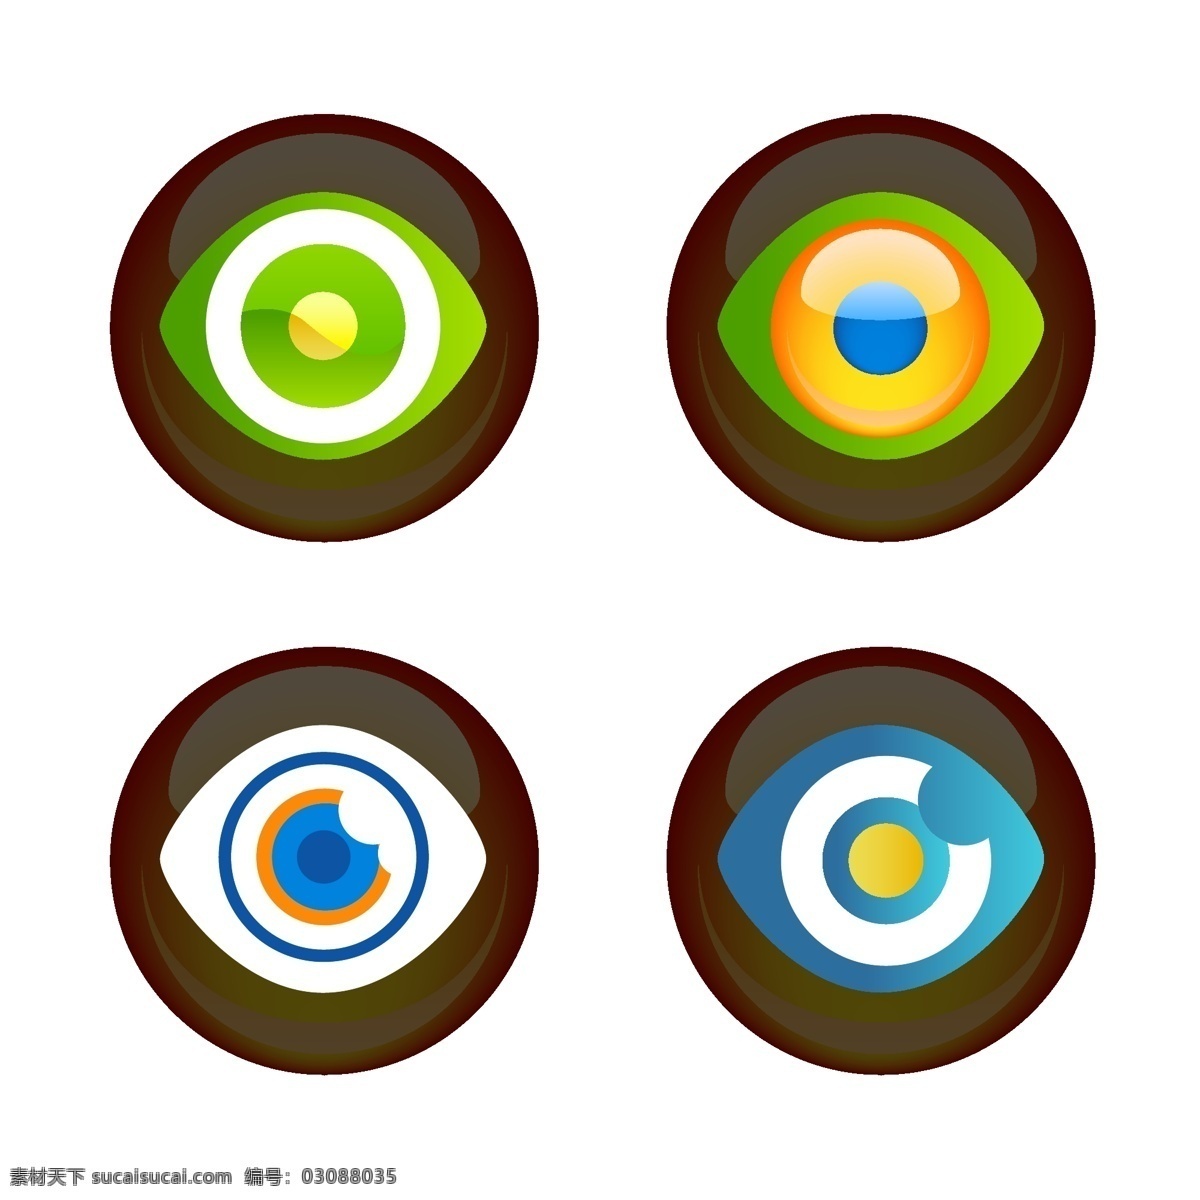 创意 彩色 眼球 矢量 插画 模板 设计稿 素材元素 眼睛 源文件 矢量图